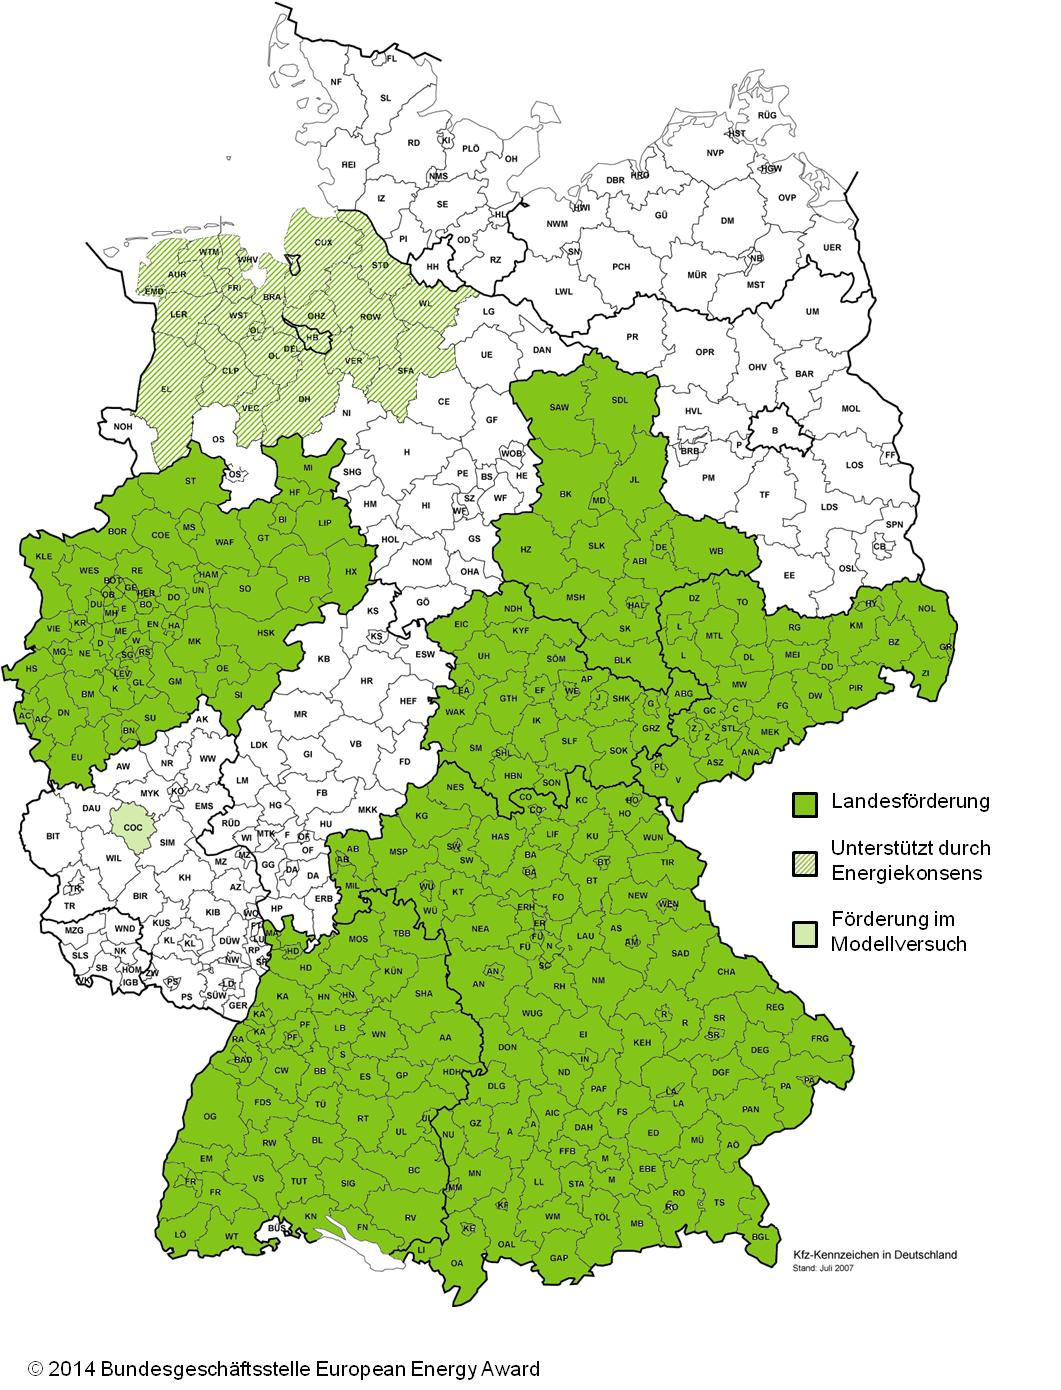 Der European Energy Award für Städte, Gemeinden und Landkreise wird in fünf Bundesländern (Nordrhein-Westfalen, Baden-Württemberg, Sachsen, Sachsen-Anhalt, Thüringen sowie in Teilen von Niedersachsen